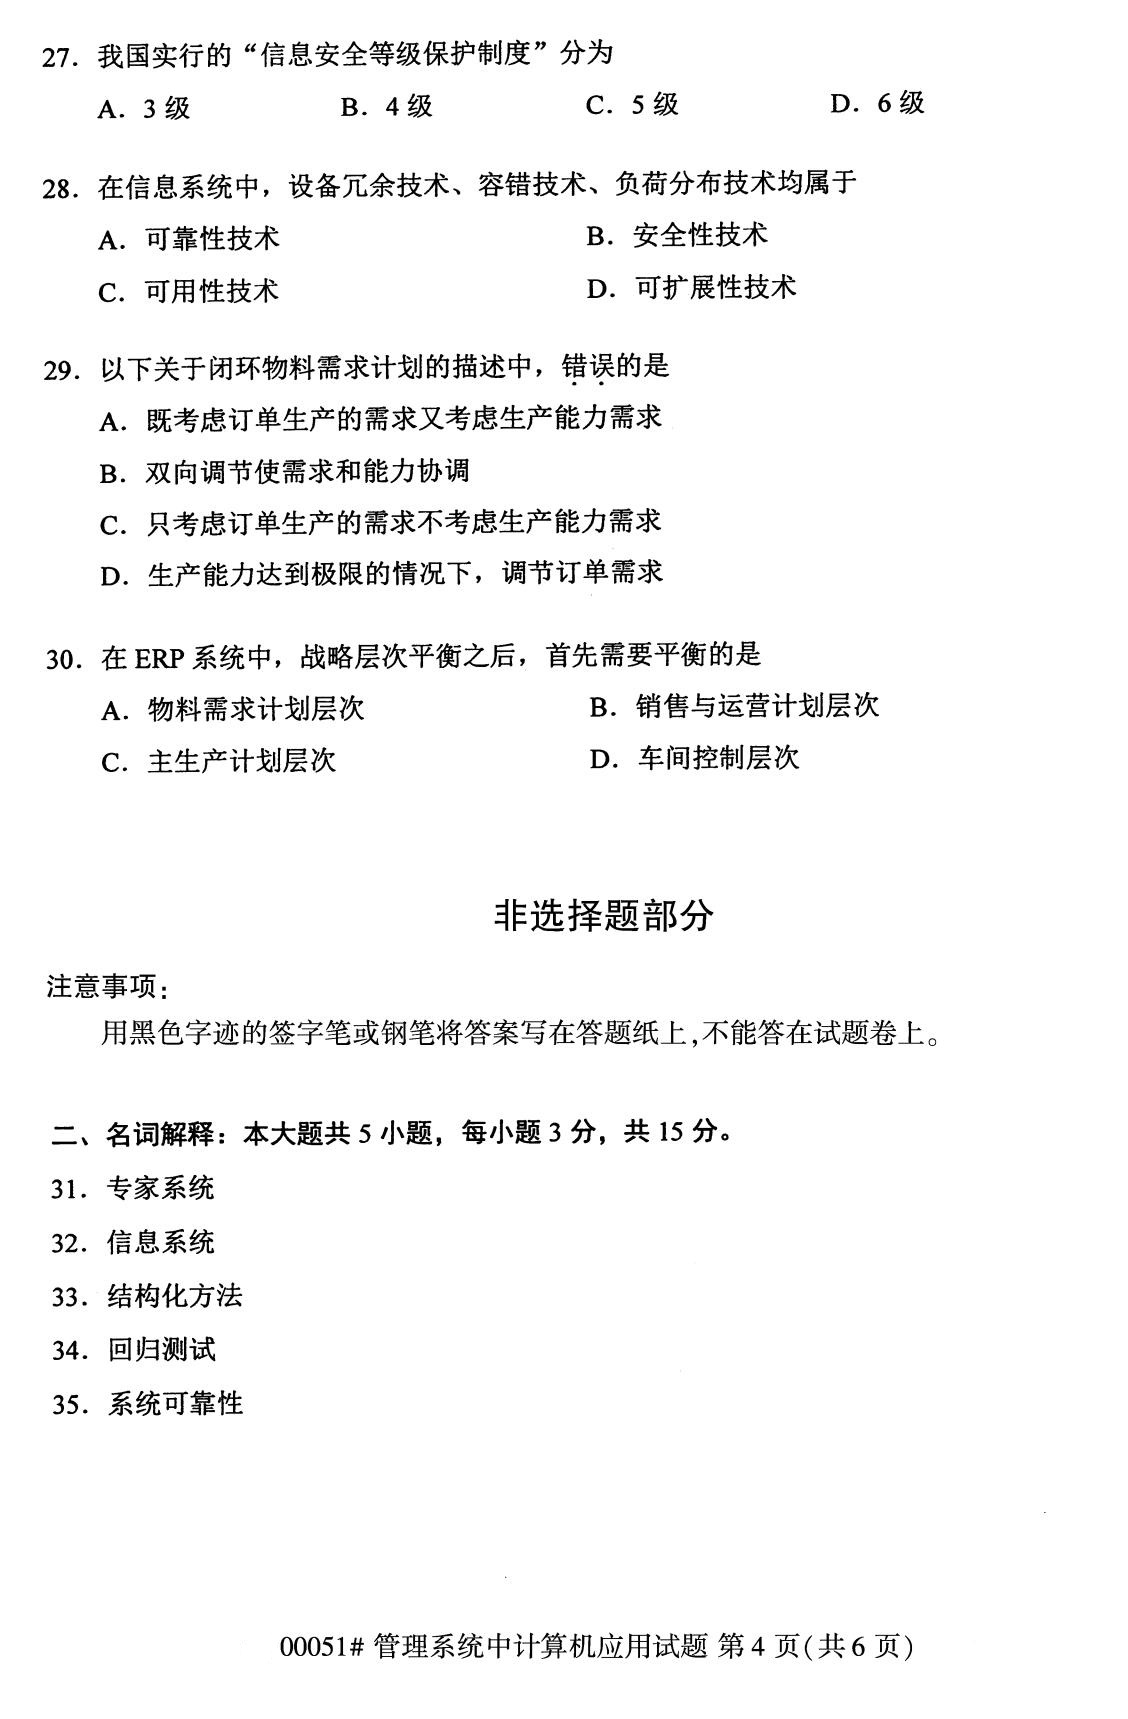 2020年8月四川省自学考试本科管理系统中计算机应用真题(图4)